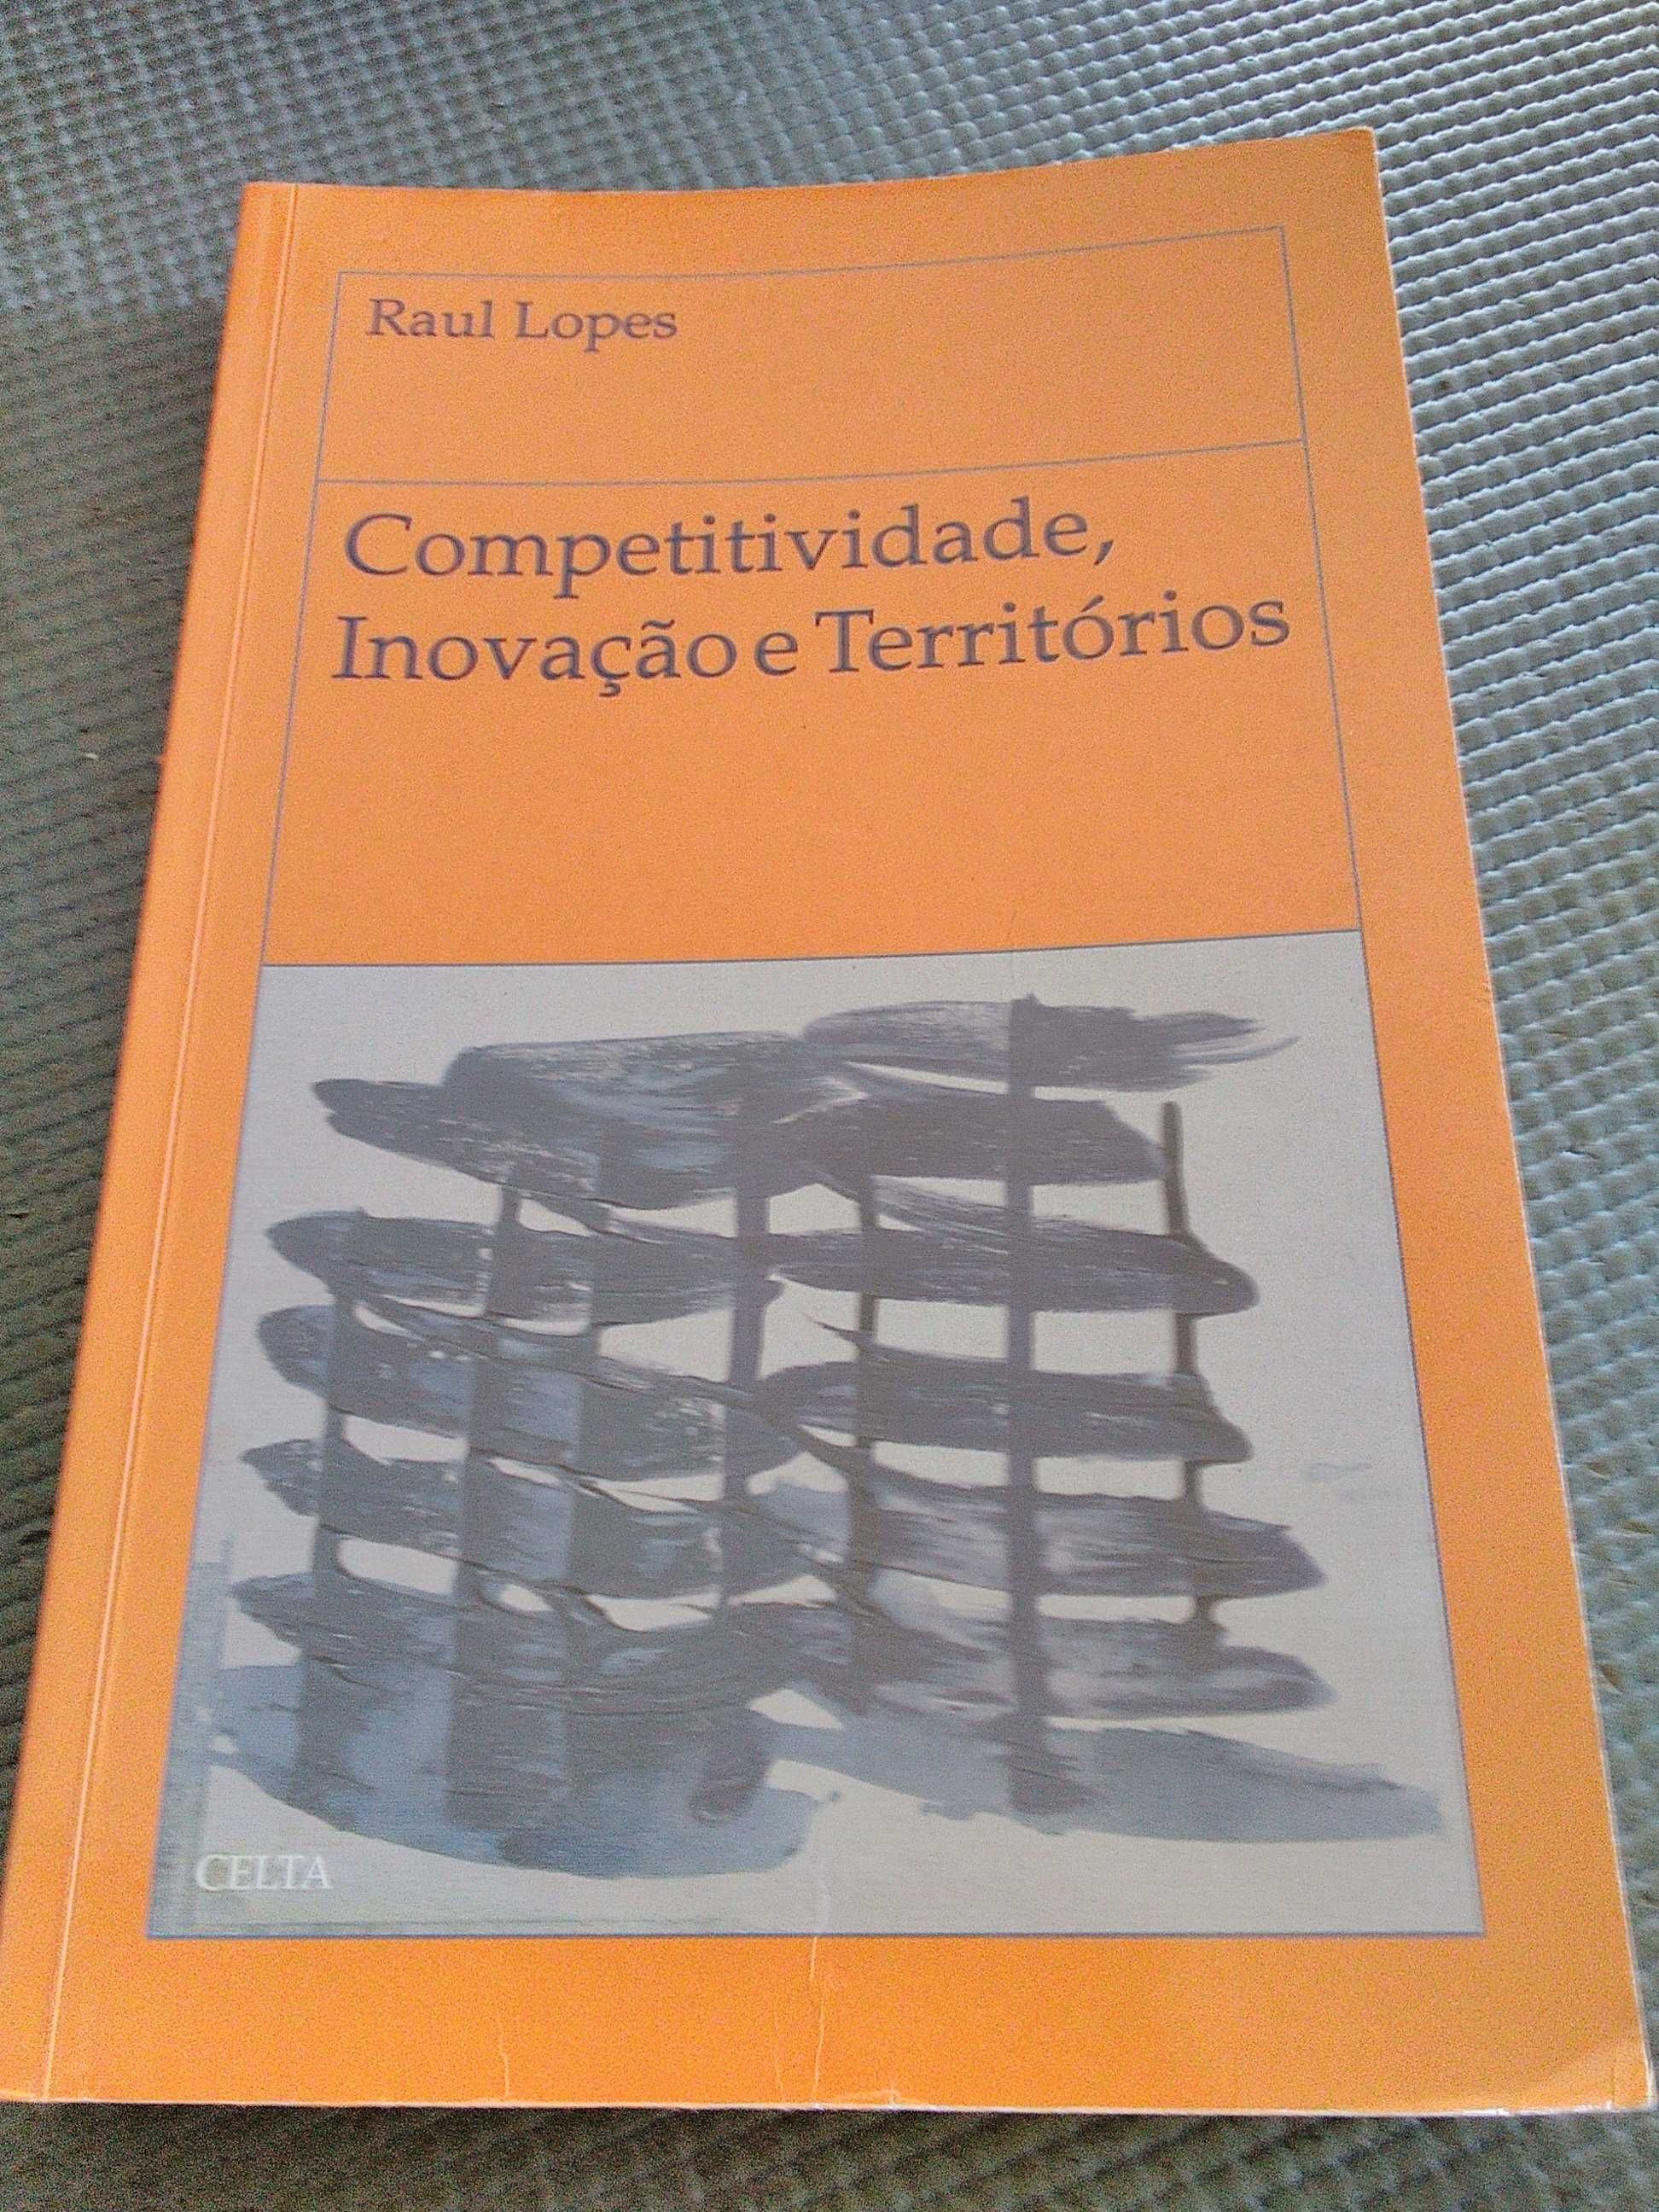 Competitividade, Inovação e Territórios de Raul Lopes